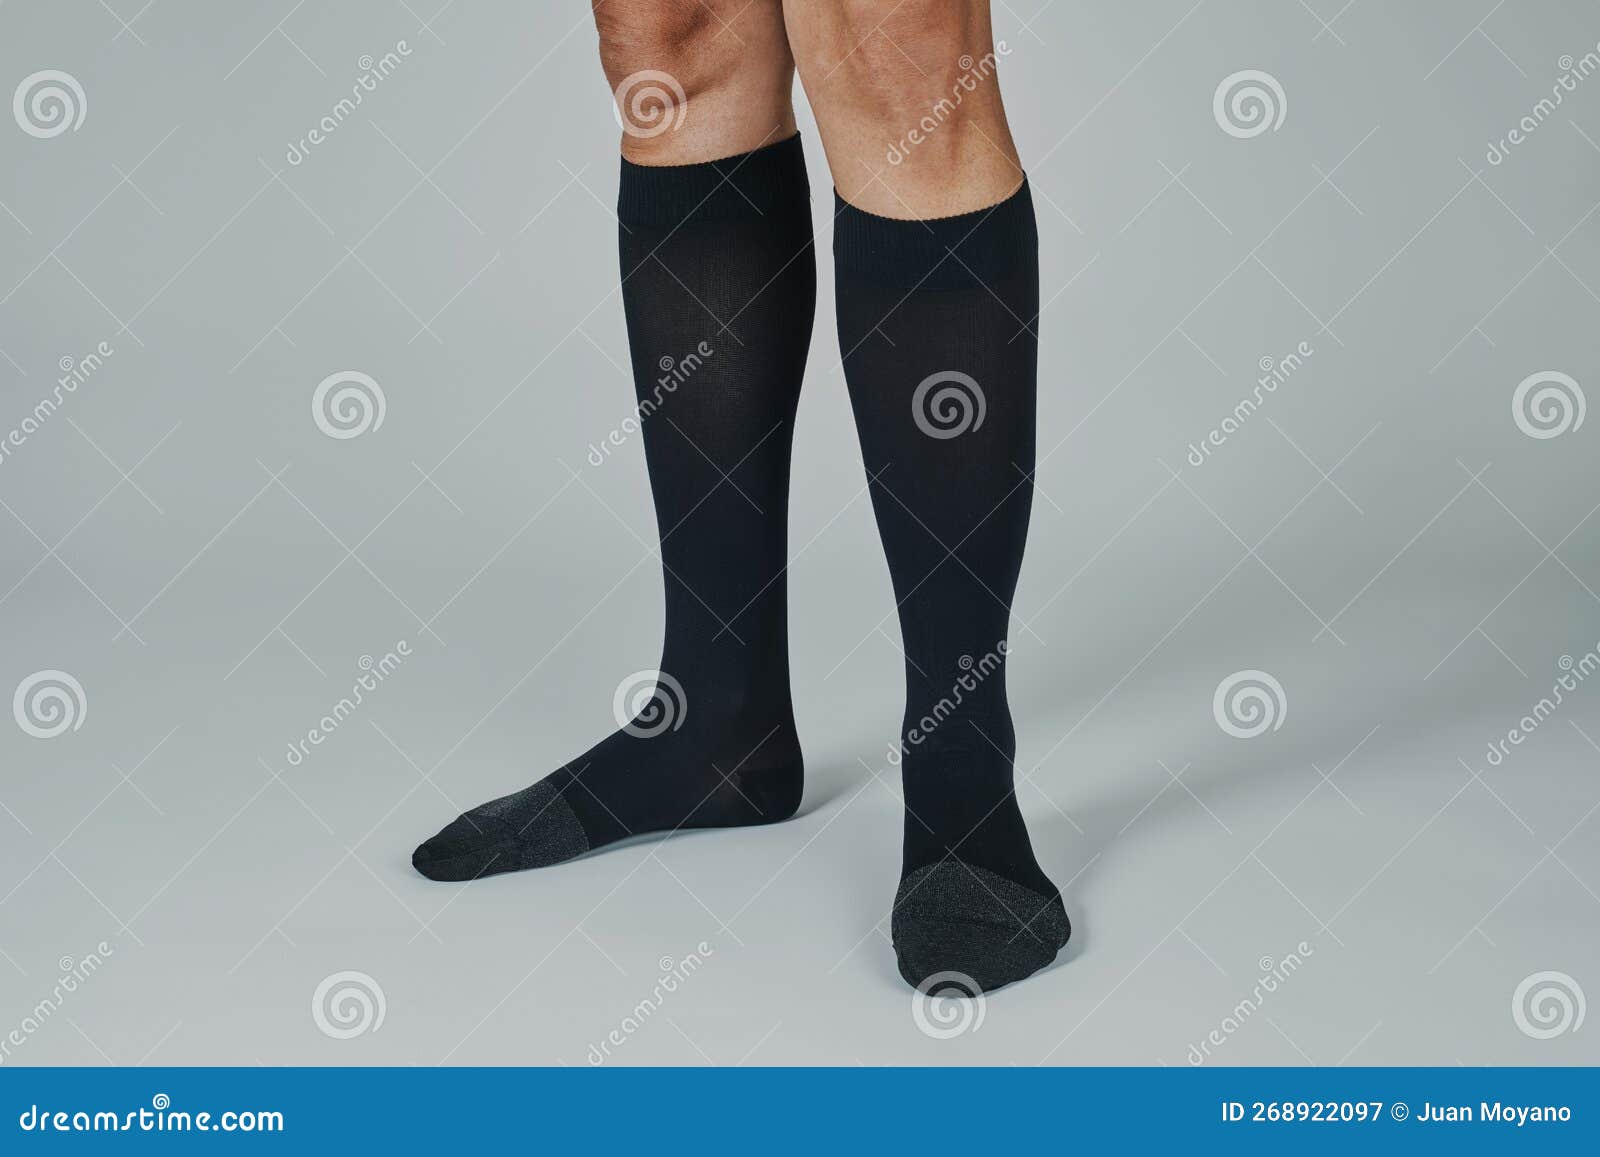 Hombre con calcetines negros